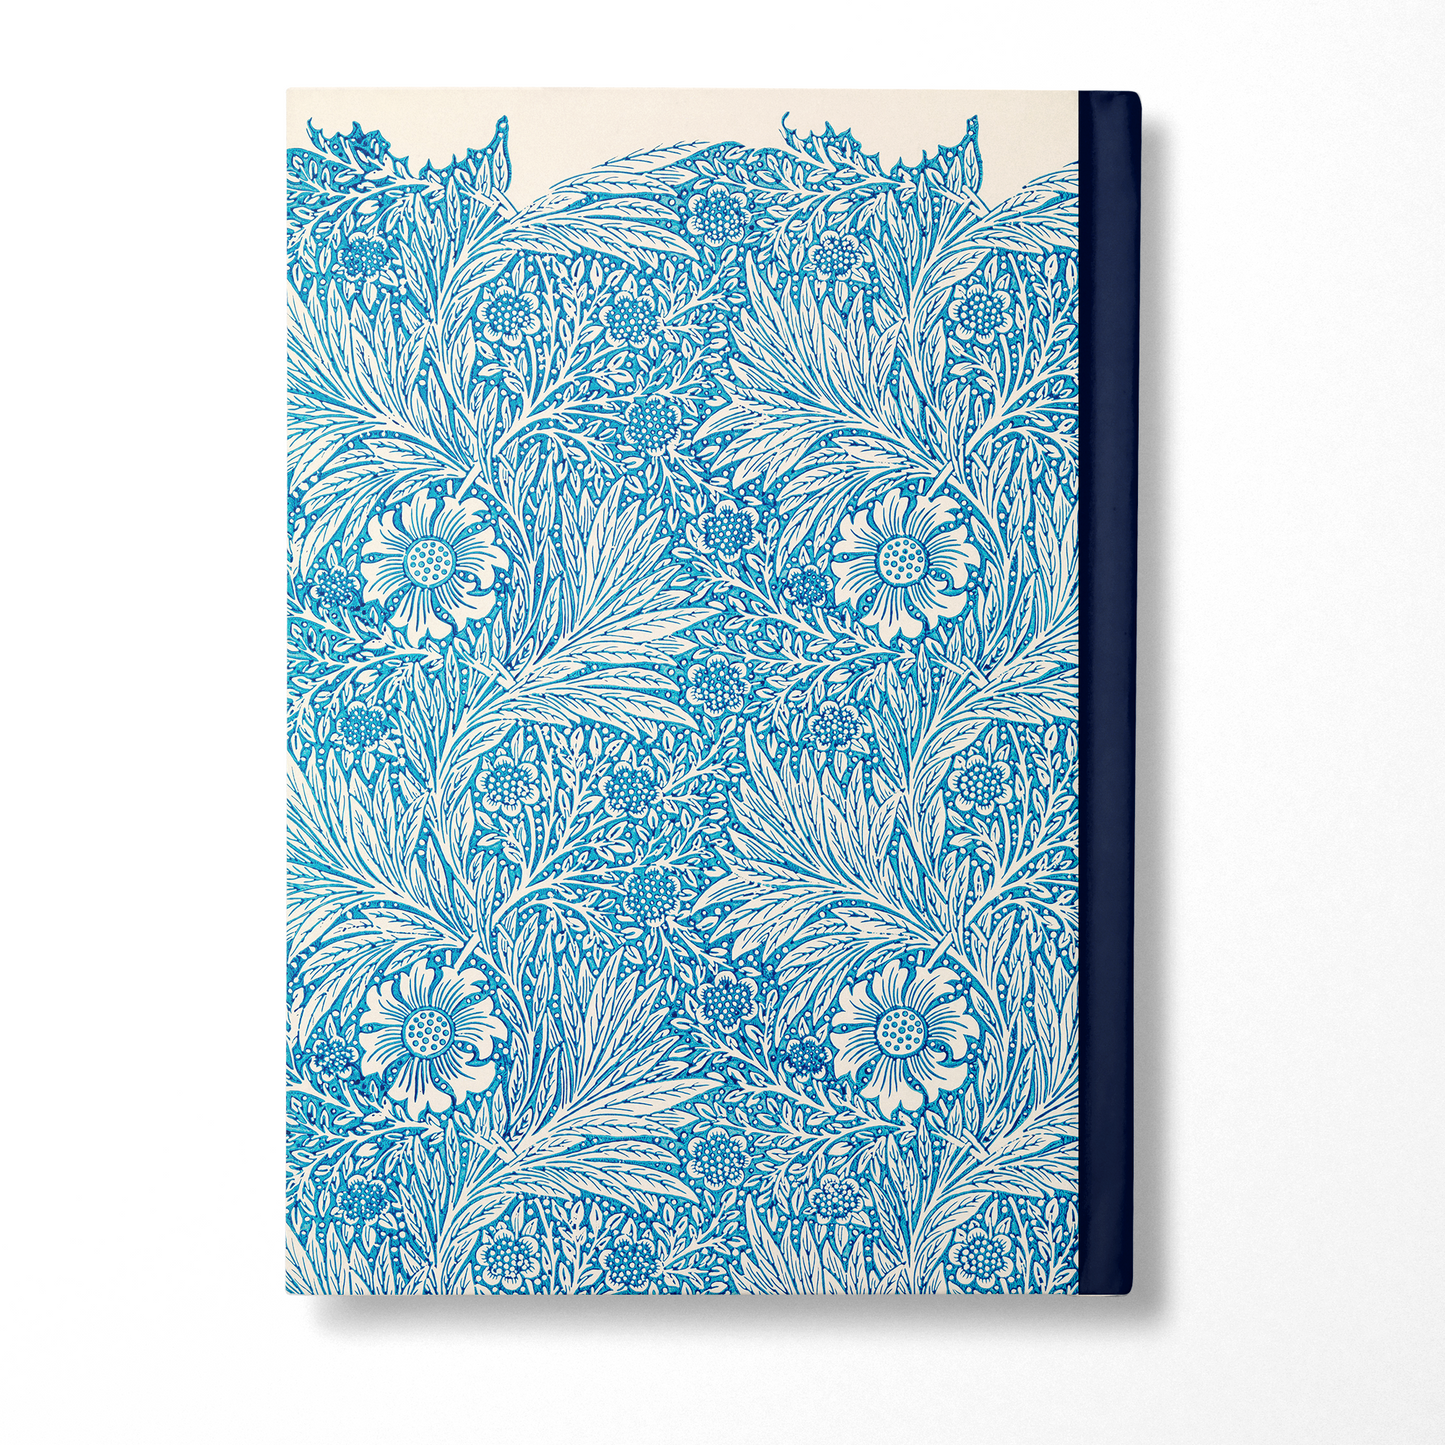 William Morris - Blue Marigold Journal